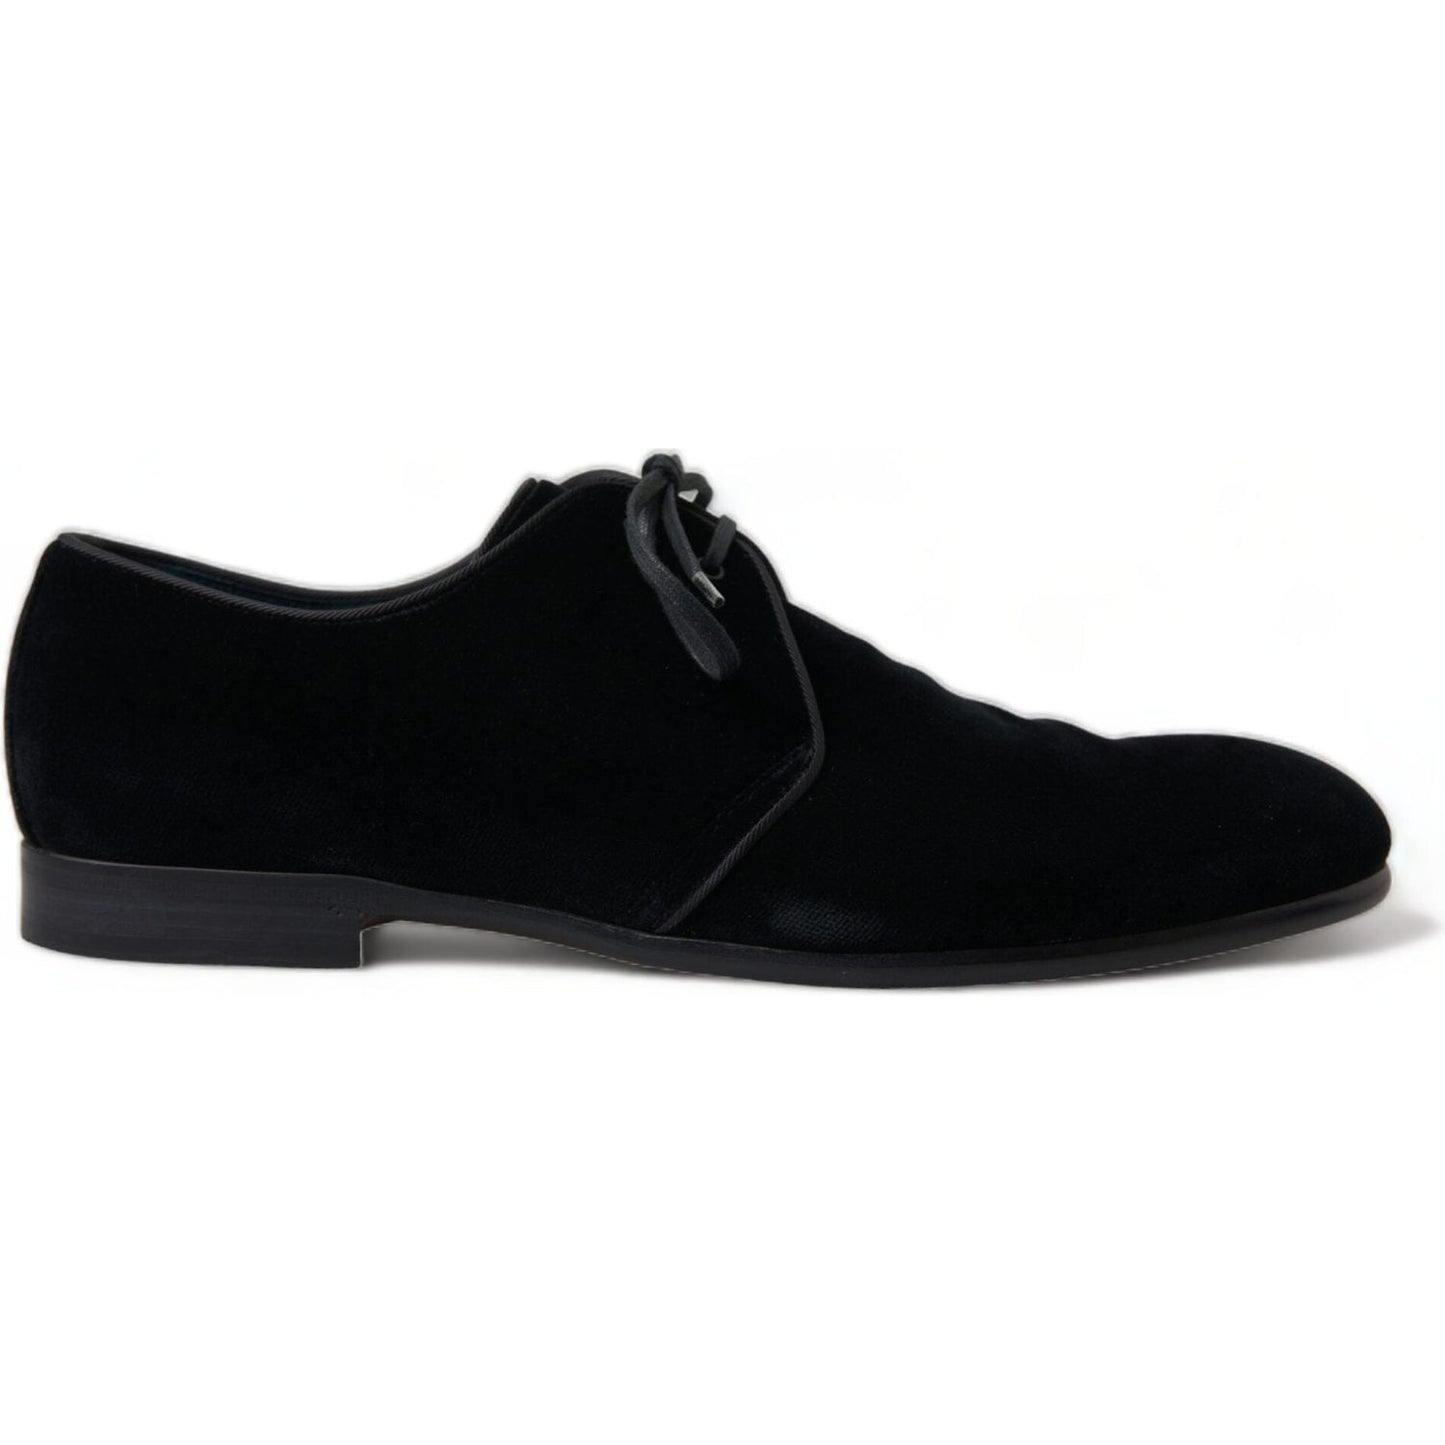 Dolce & Gabbana Elegant Black Velvet Derby Dress Shoes black-velvet-lace-up-formal-derby-dress-shoes 465A1263-bg-scaled-f60c6dc7-7e5.jpg